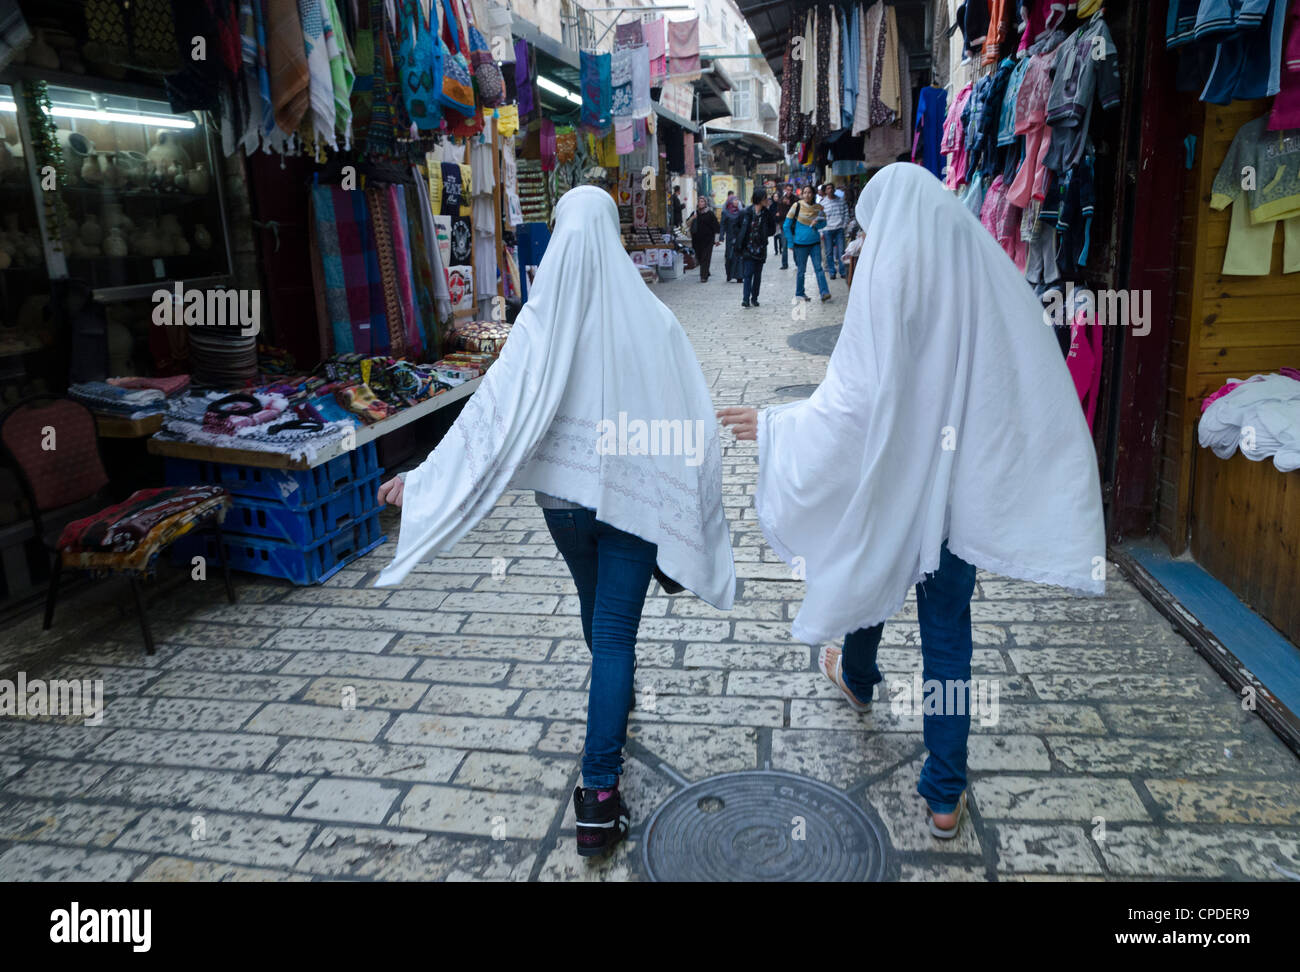 Deux jeunes femmes palestiniennes portant un hijab sur leur manière de prier, vieille ville, Jérusalem, Israël, Moyen Orient Banque D'Images